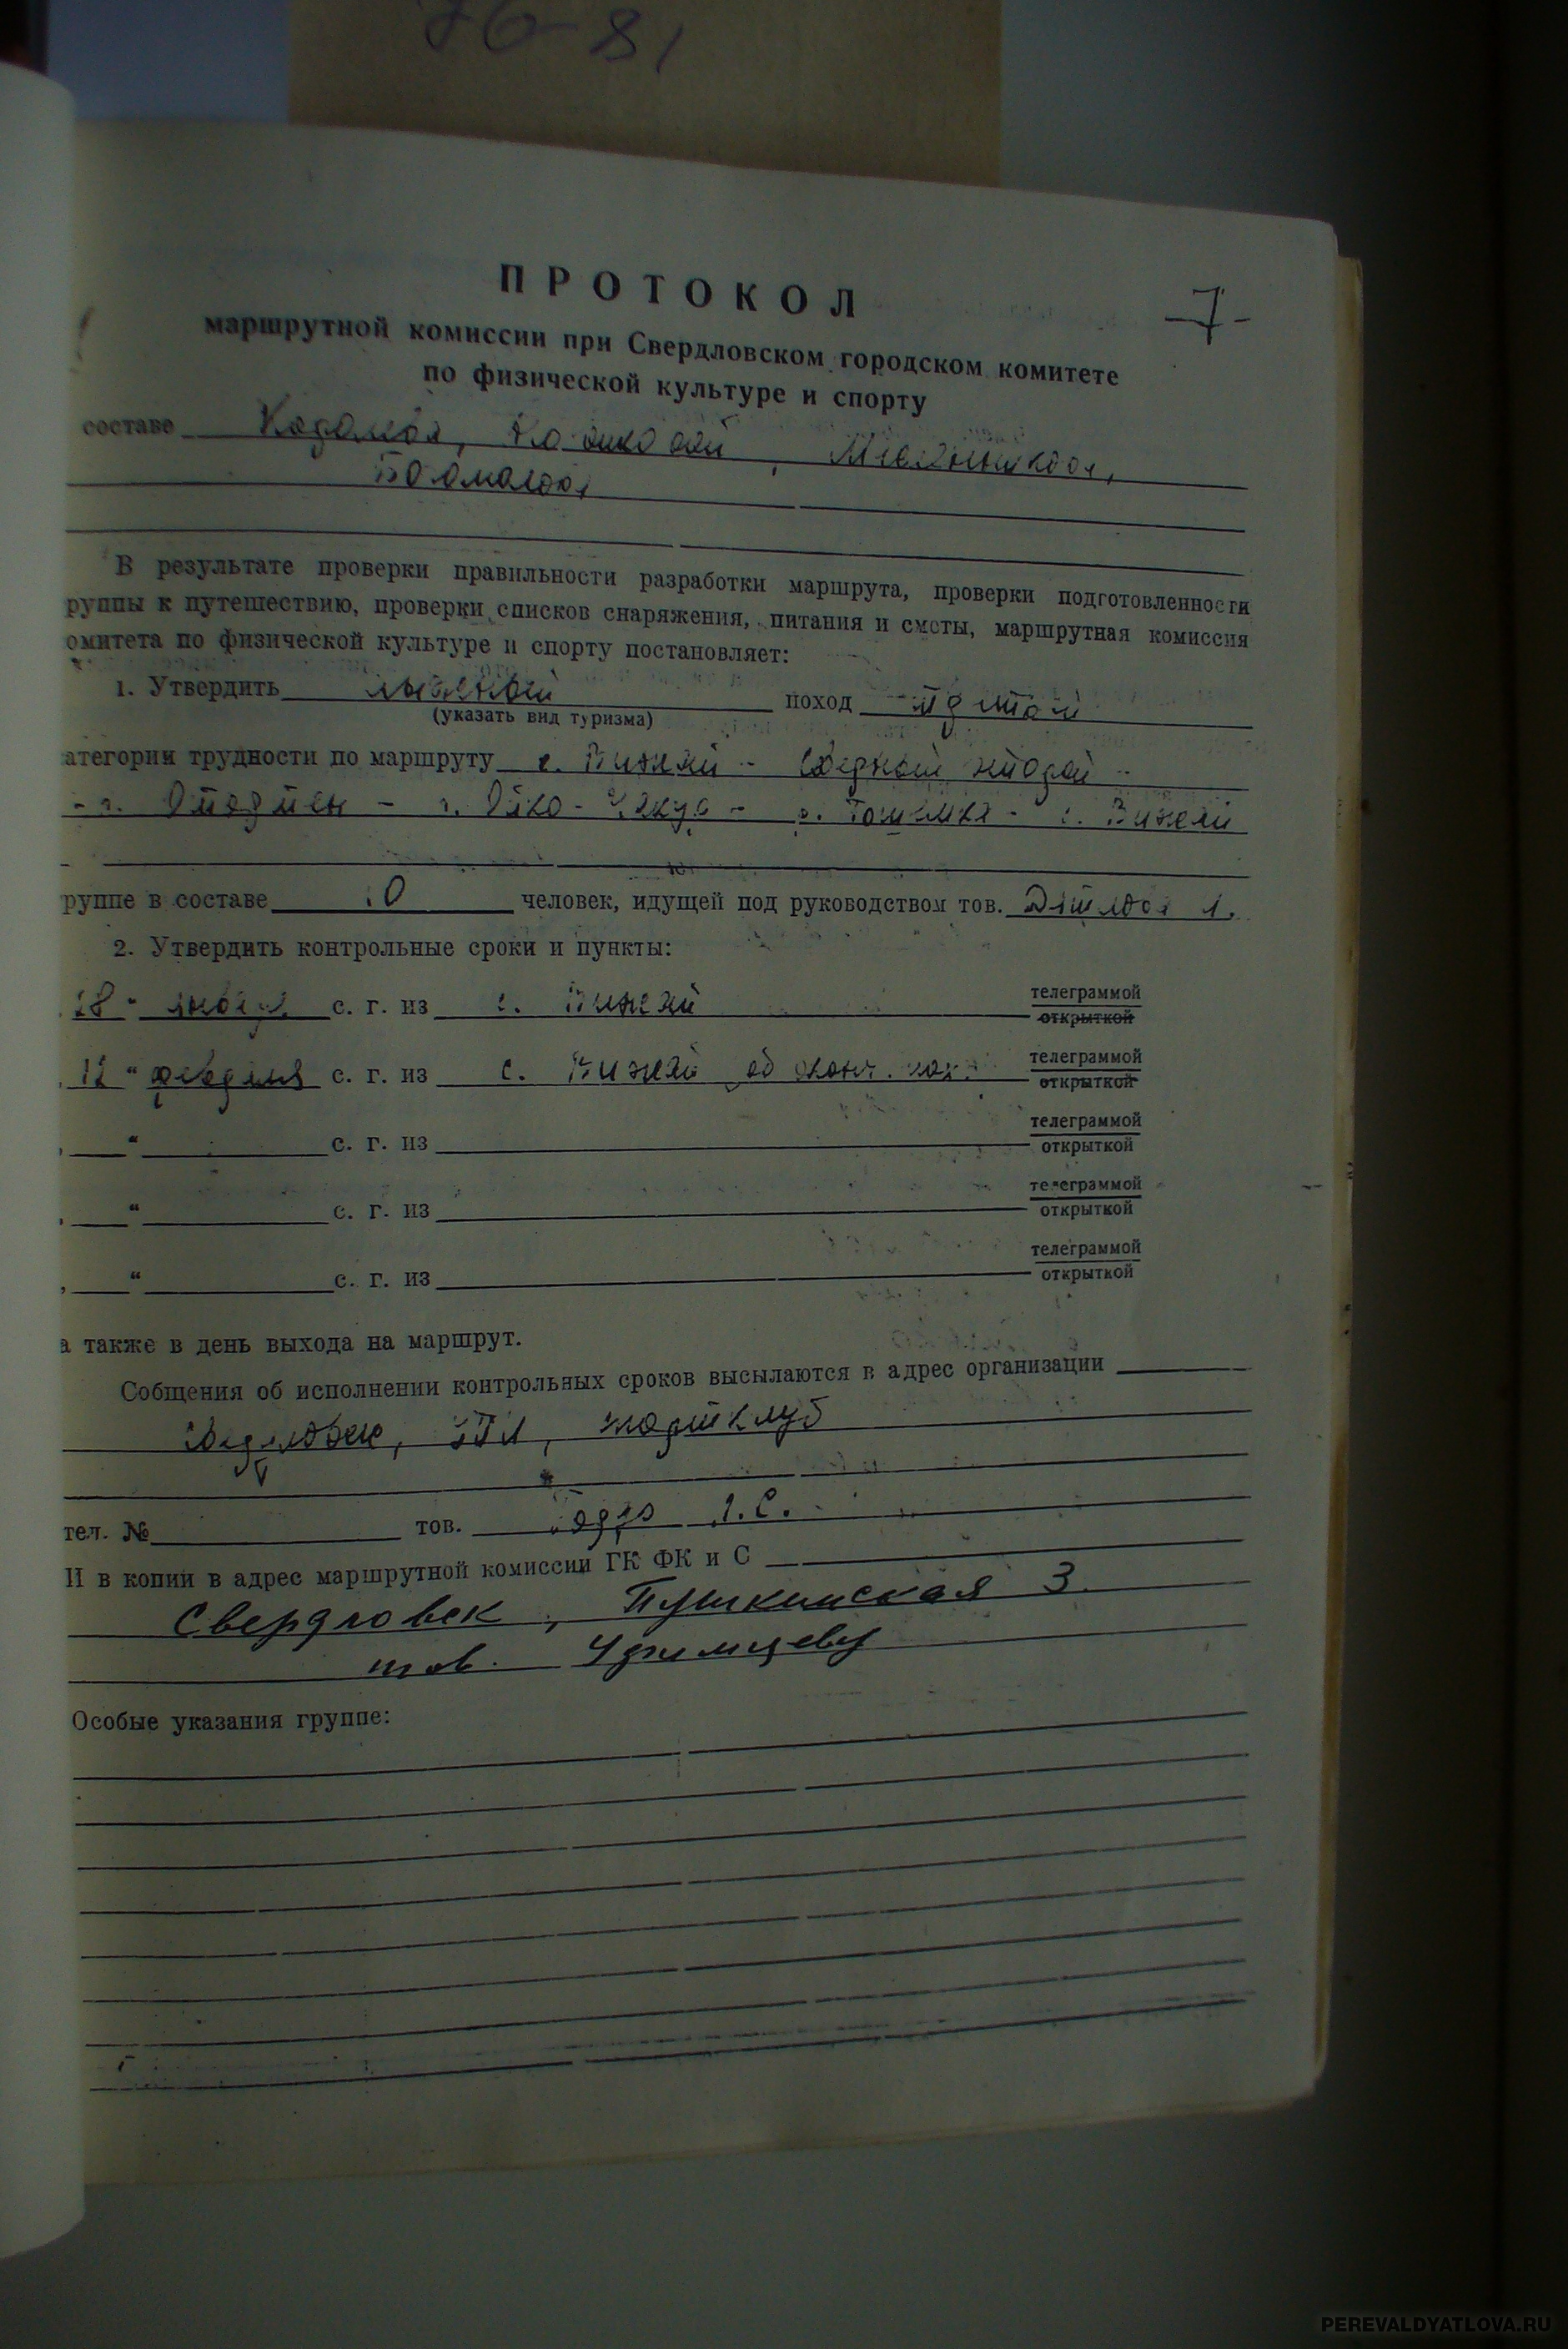 Маршрутная комиссия. Перевал Дятлова уголовного копия маршрутного листа образец.